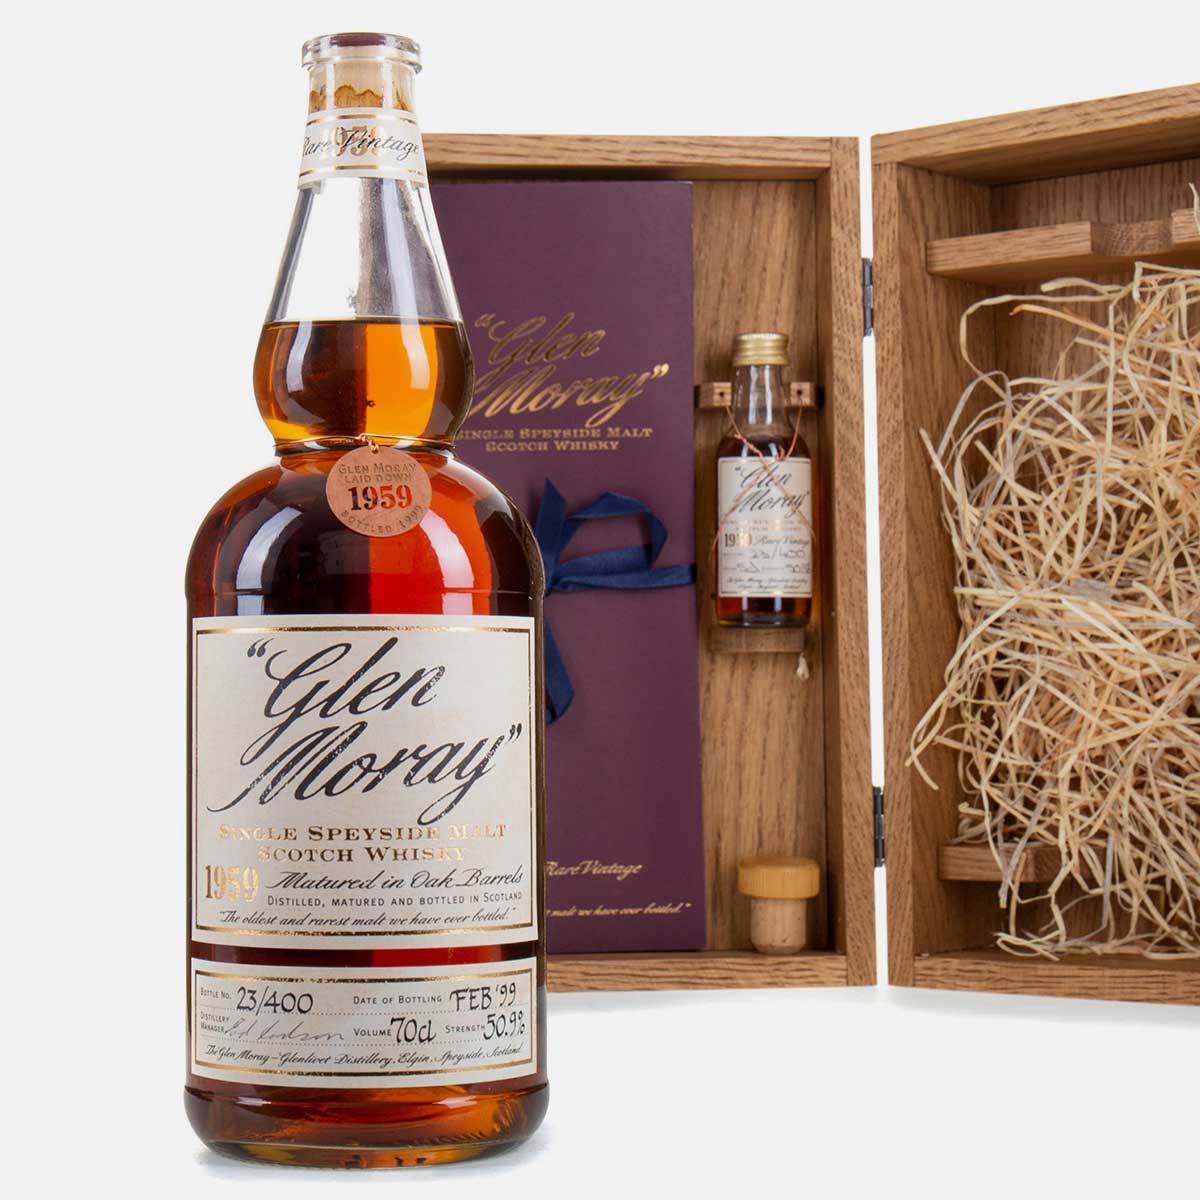 Whisky: From Glen to Glen